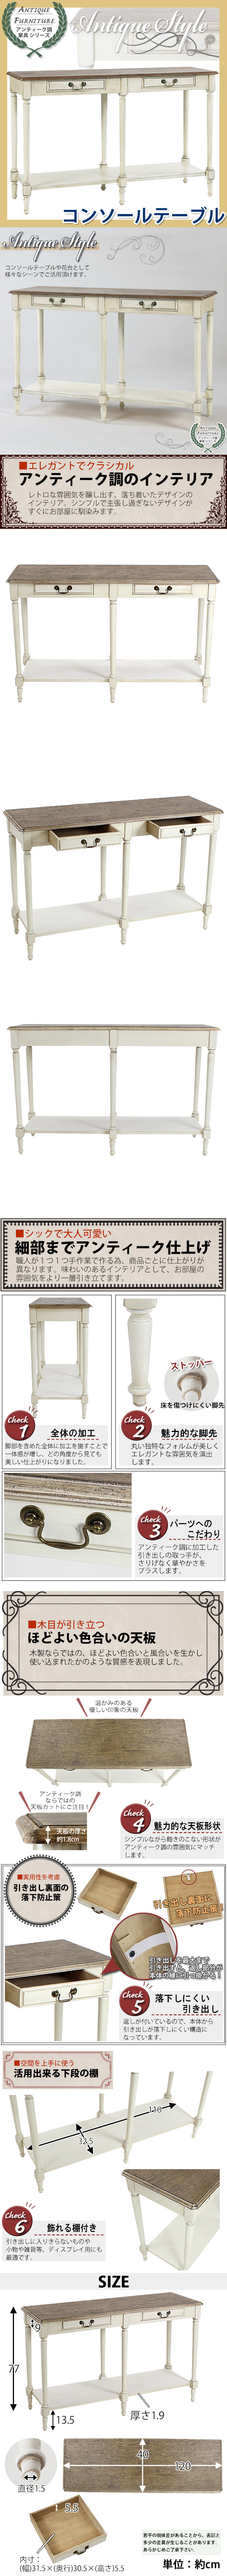 【買付品】アンティーク調 コンソールテーブル 木製 家具 白 テーブル サイドテーブル